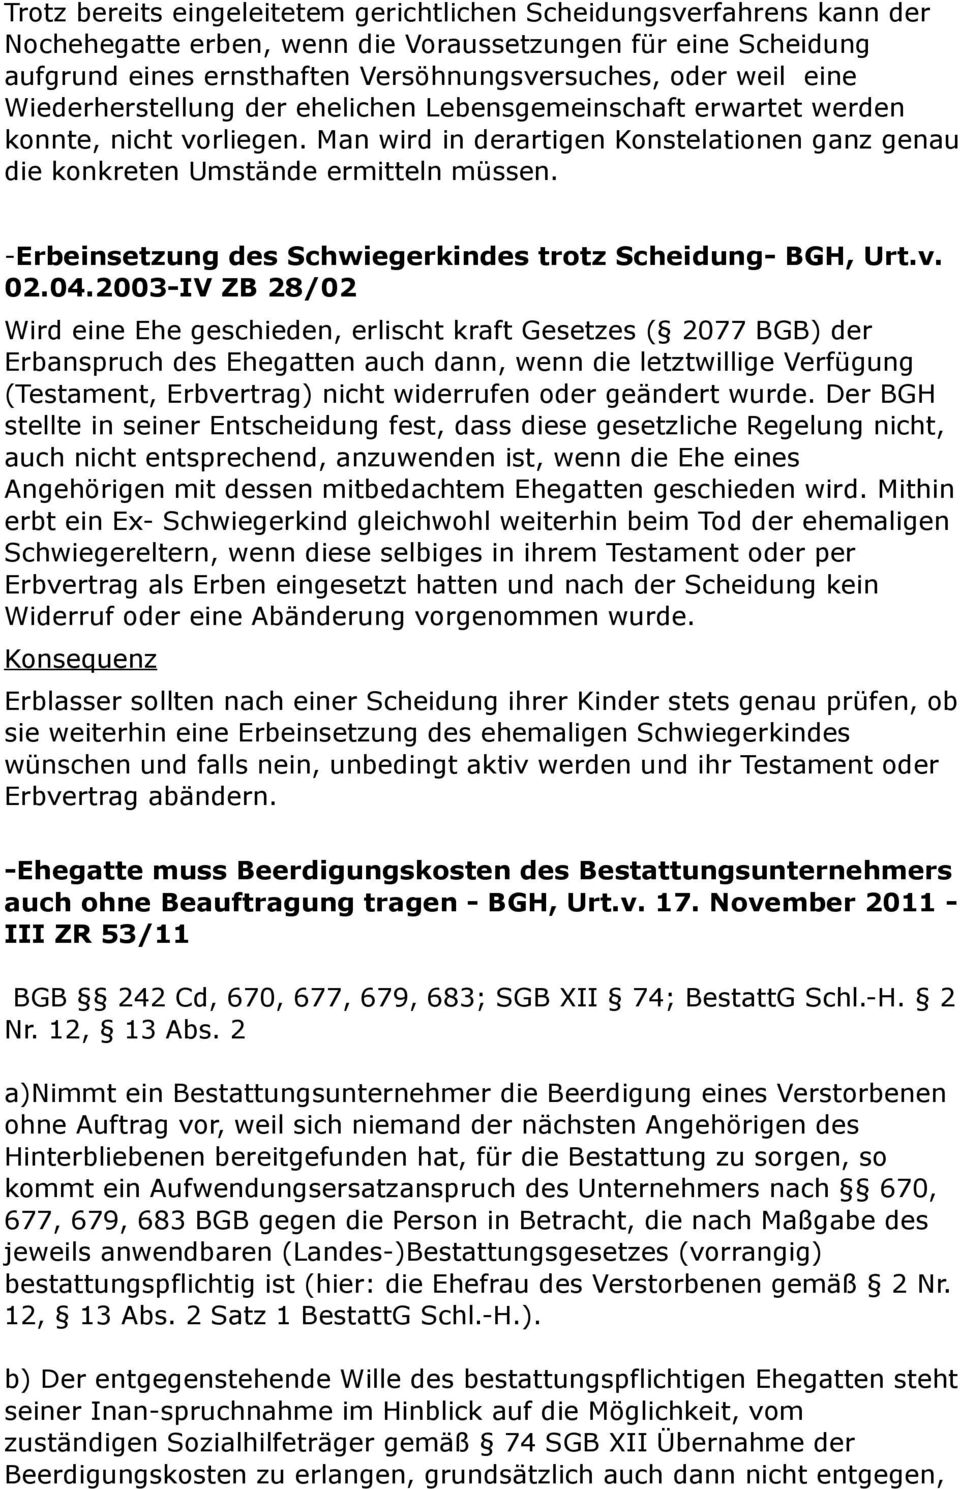 -Erbeinsetzung des Schwiegerkindes trotz Scheidung- BGH, Urt.v. 02.04.